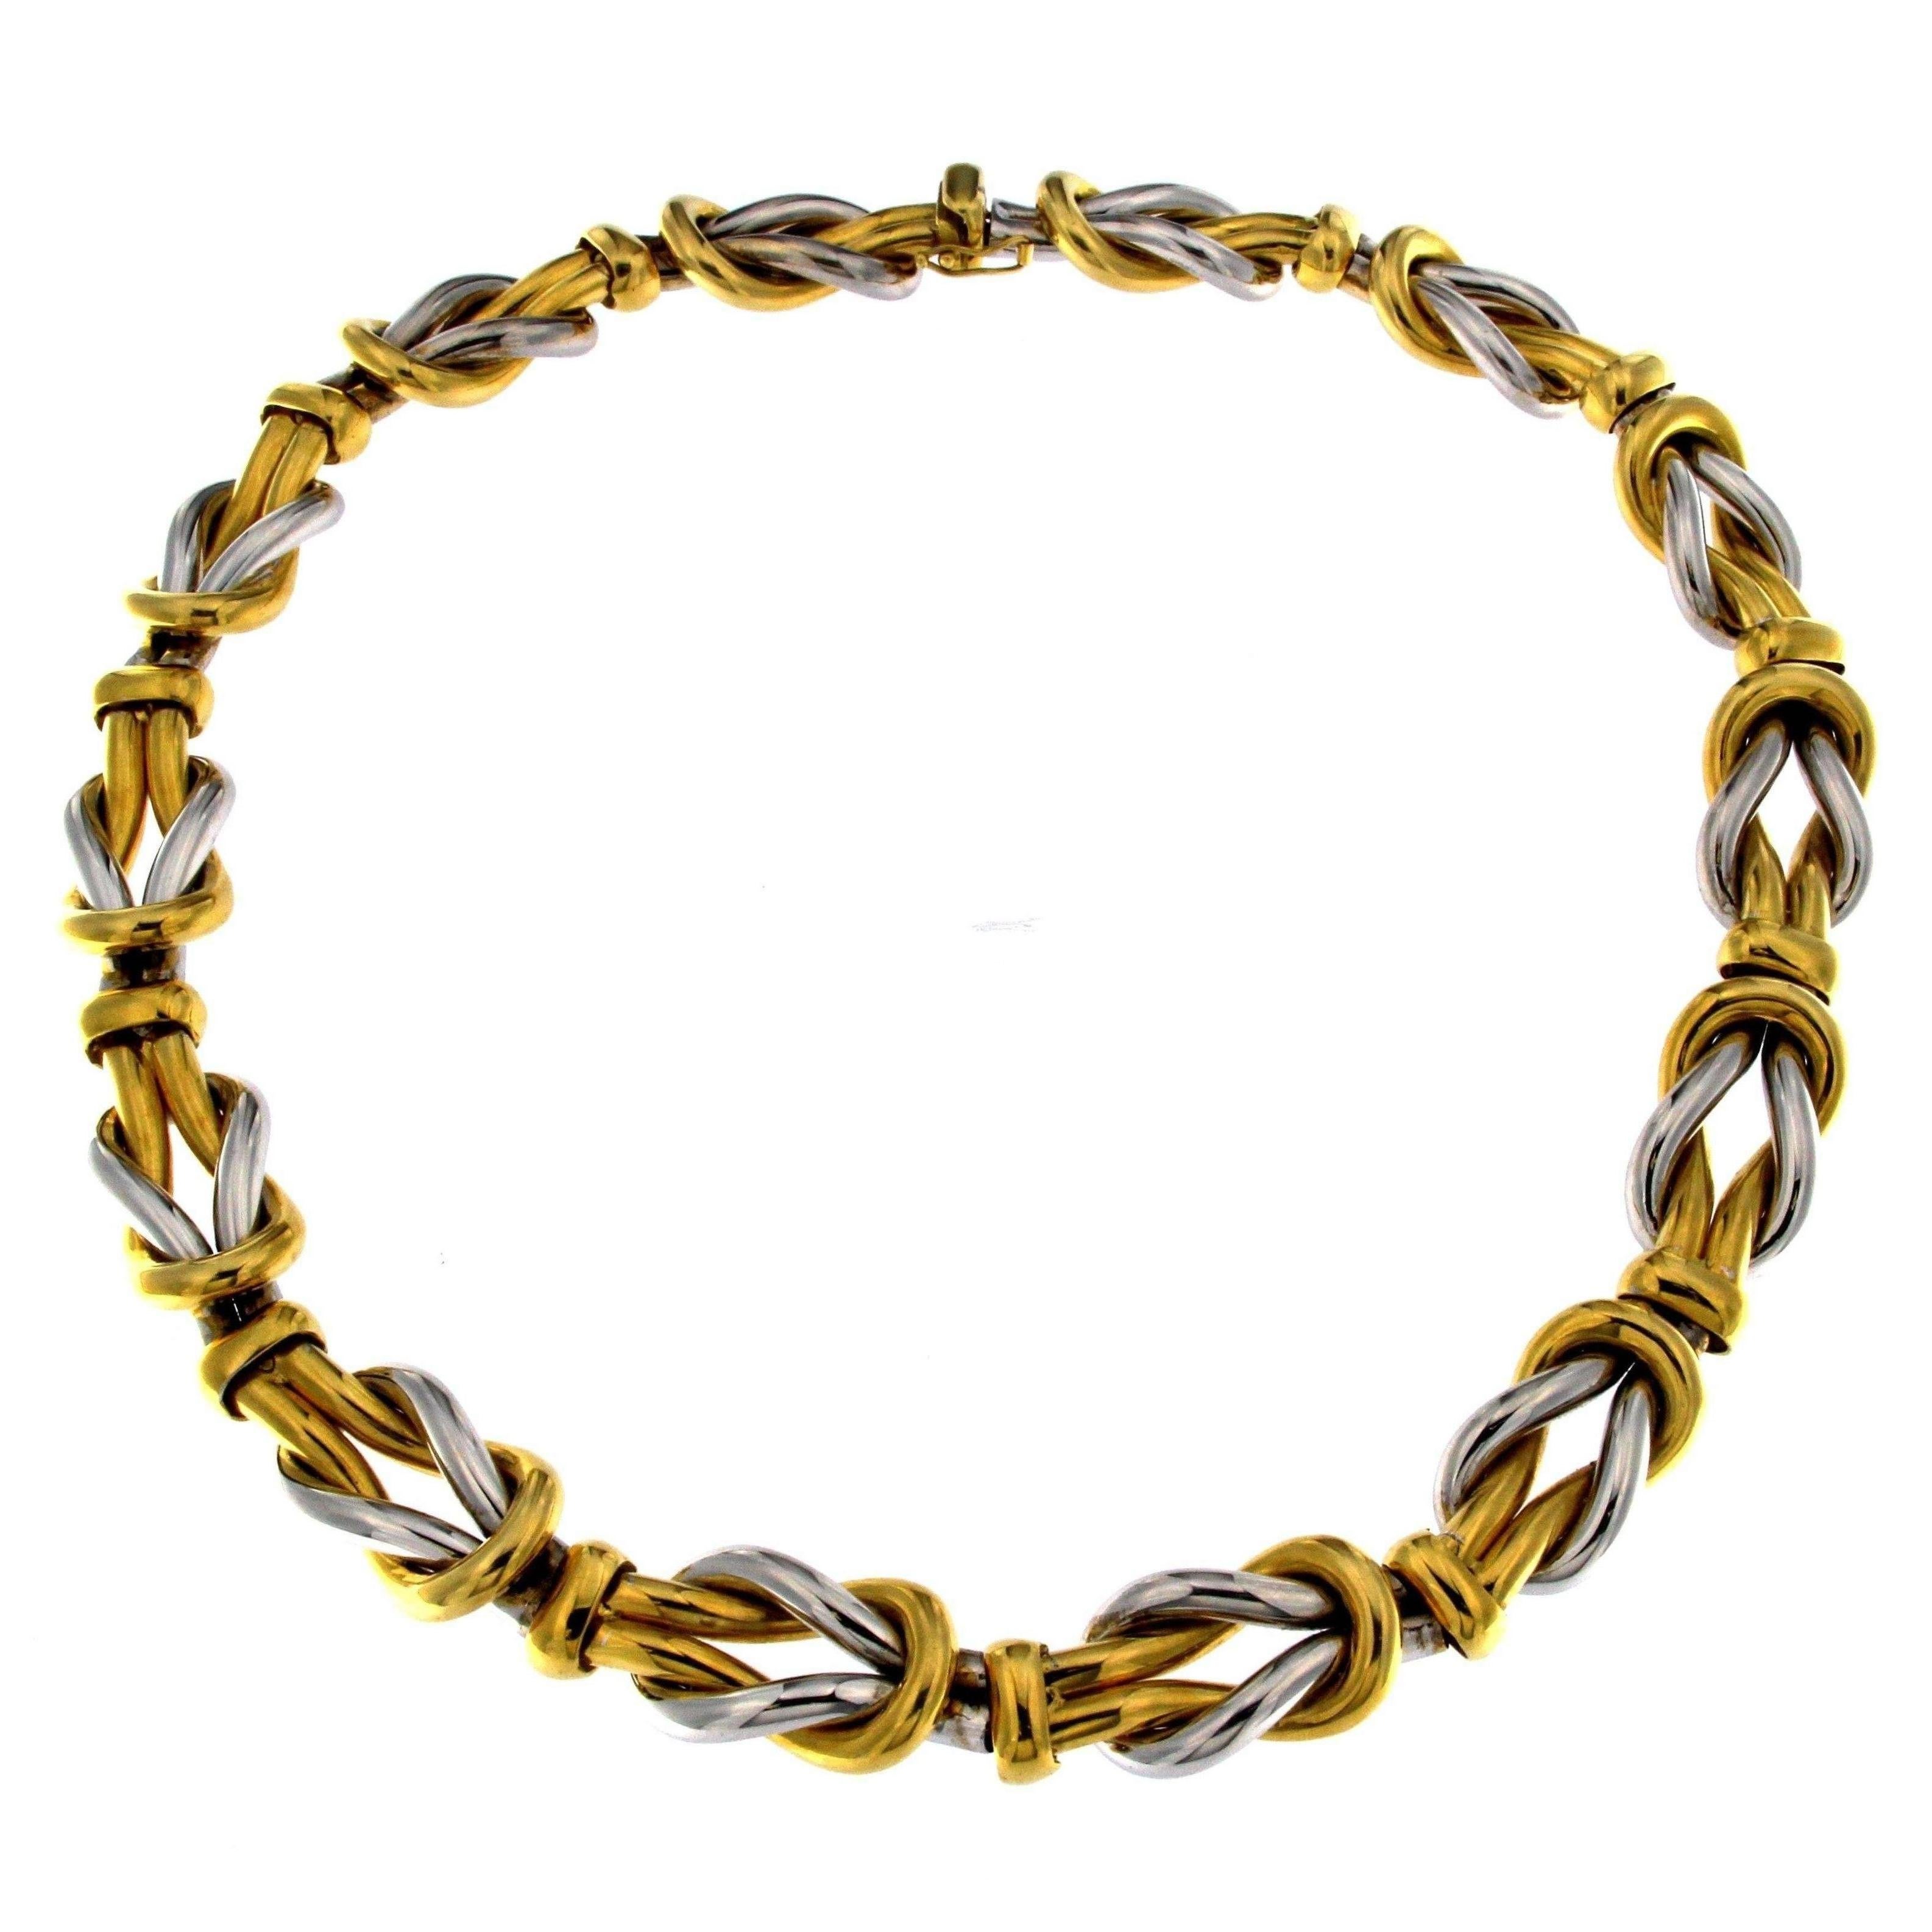 die Abwechslung von Gelbgold und Weißgold in der Abfolge der Knoten von großem Wert für das Design dieser Halskette, die sich für eine sportliche Garderobe, aber auch für besondere Anlässe eignet
Das Gesamtgewicht des Goldes beträgt 116,90 GR

